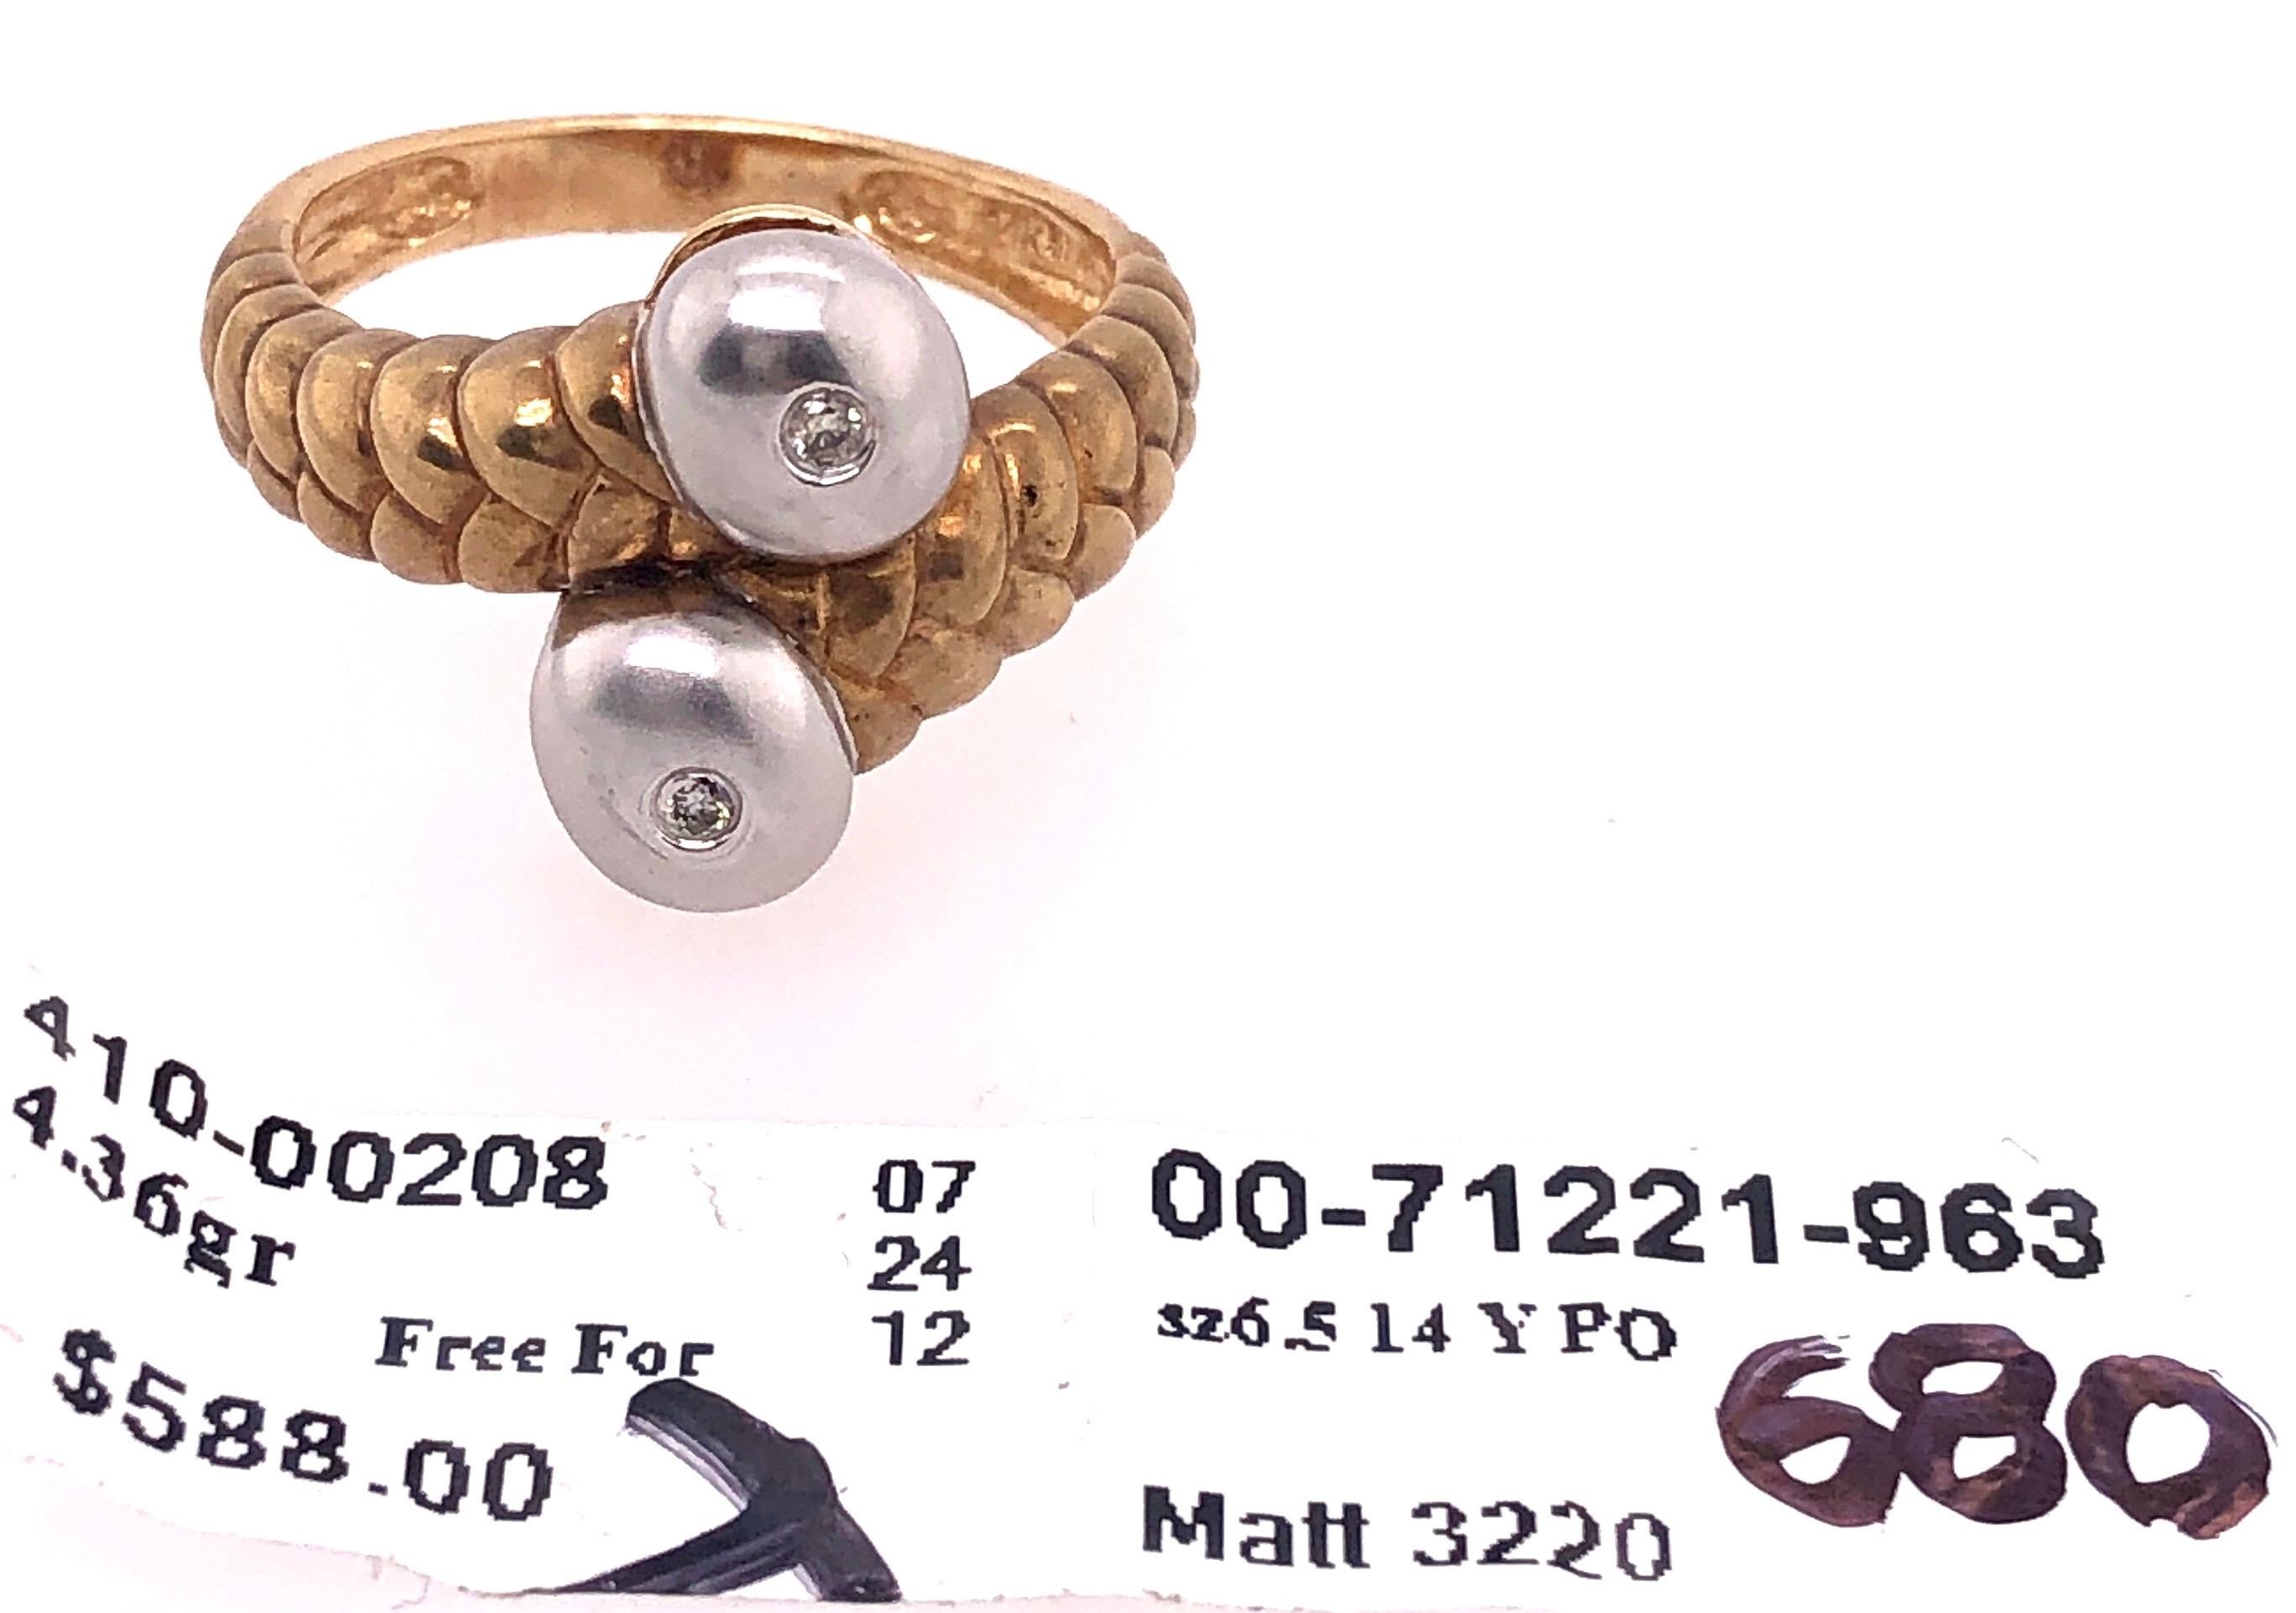 14 Karat Two Tone Gold Matte Finish Fashion Ring.
Size 6.5
4.36 grams total weight.